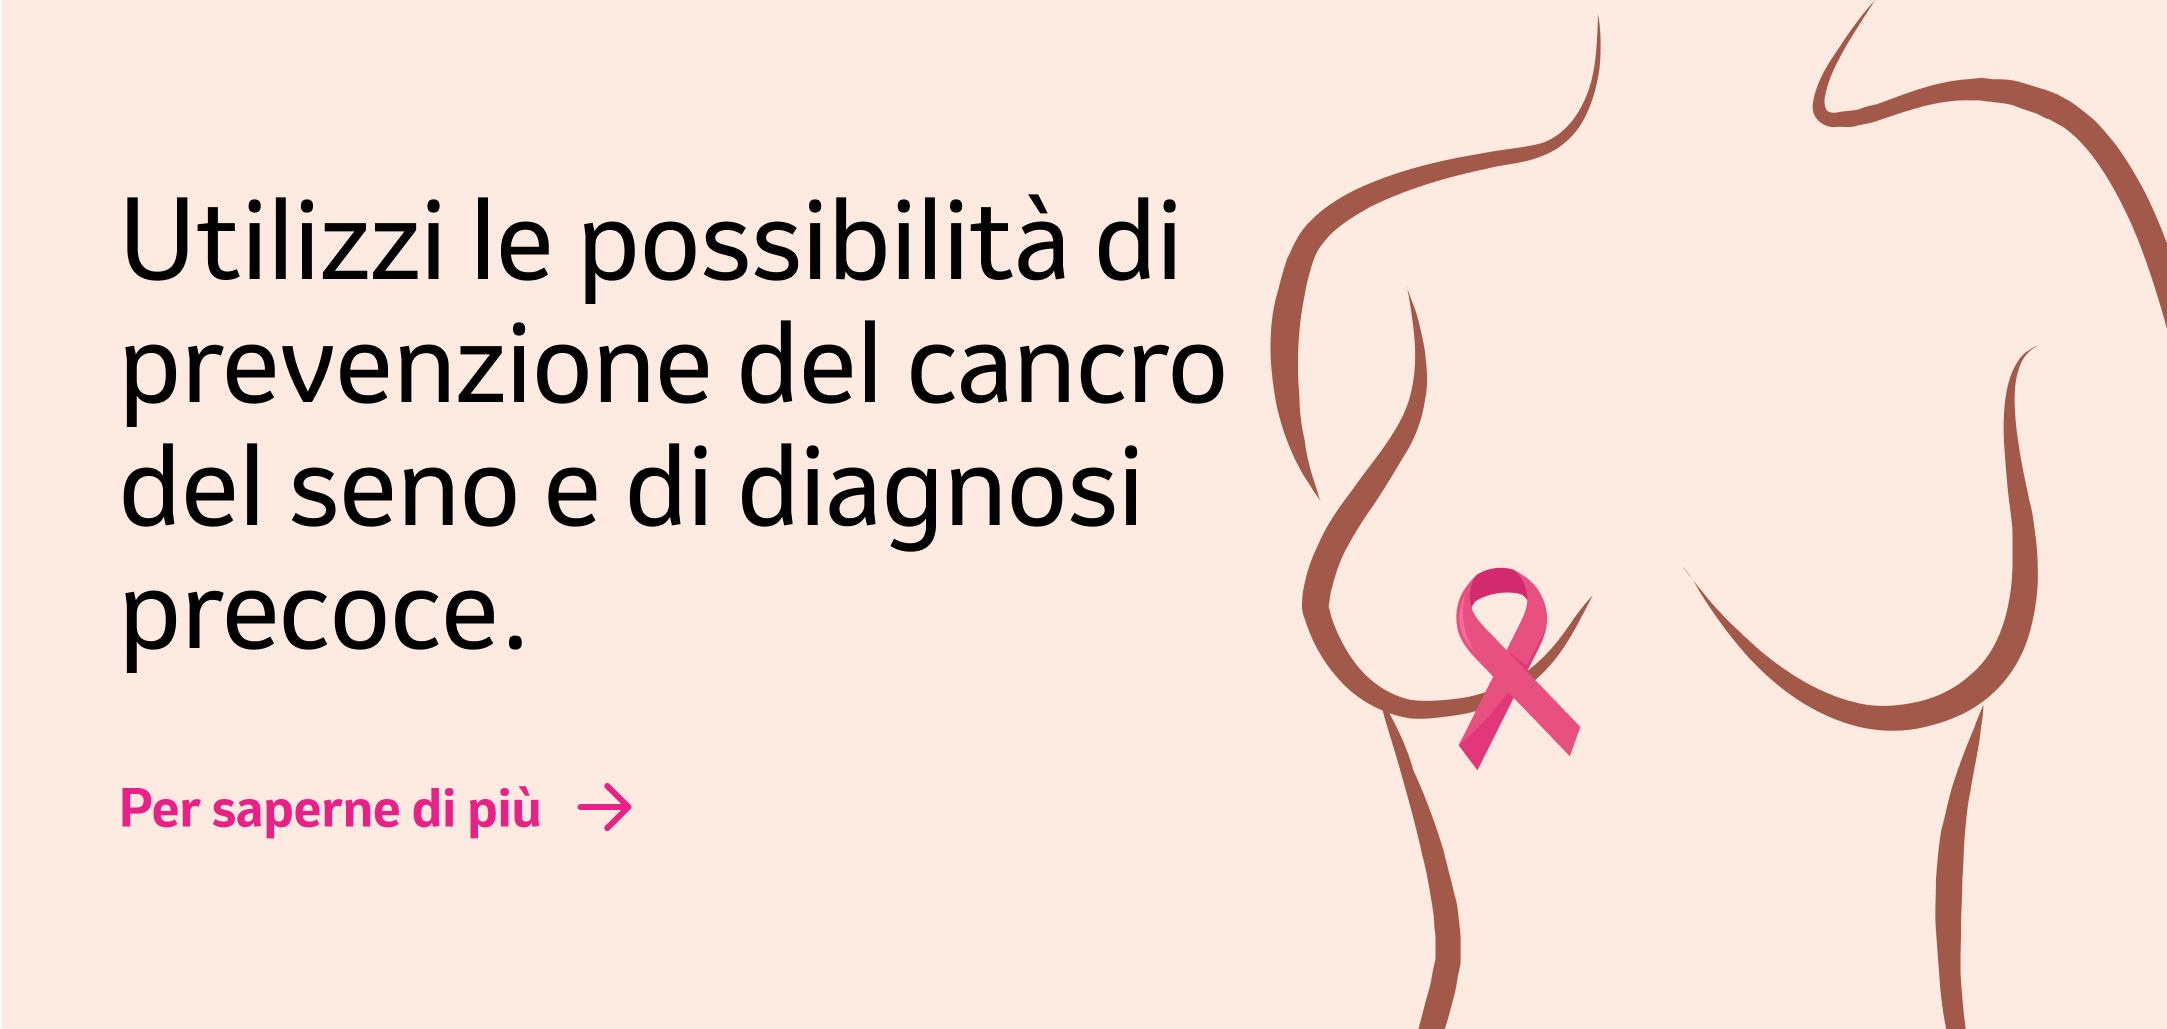 Banner "Utilizzi le possibilità di prevenzione del cancro del seno e di diagnosi precoce.